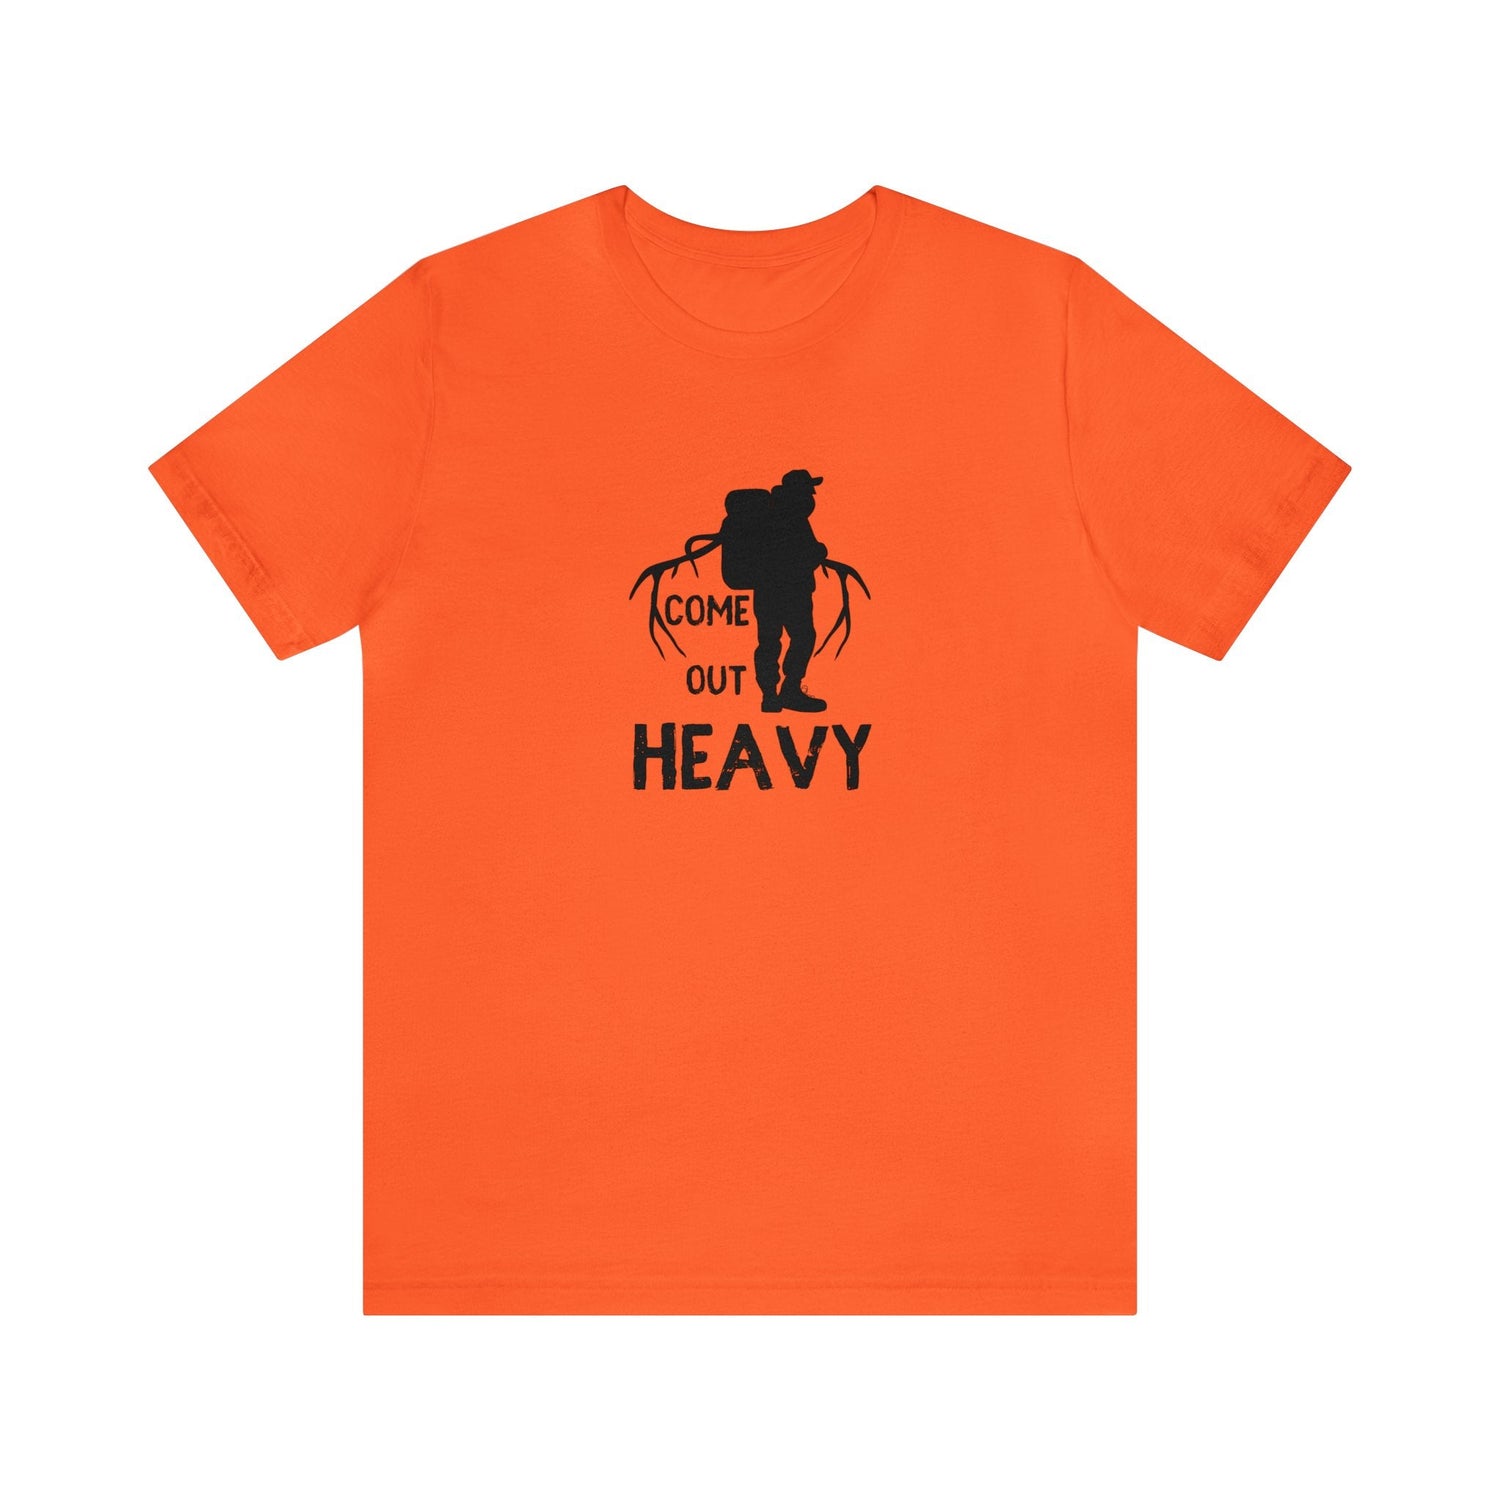 Western elk hunting t-shirt, color orange, front design placement